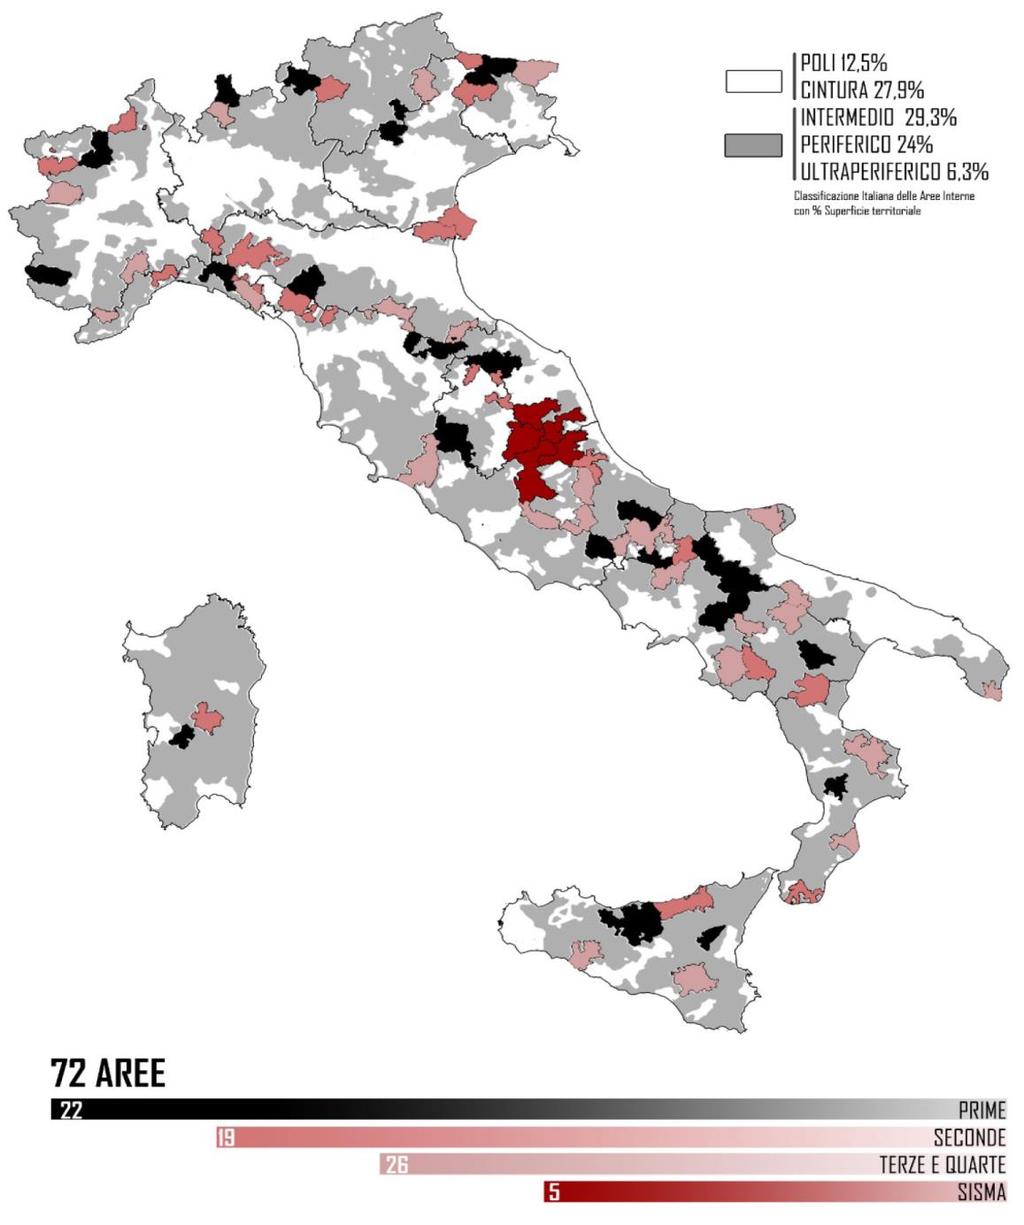 Le Aree Interne italiane rappresentano - il 52% dei comuni, - il 22% della popolazione - circa il 60% della superficie territoriale del Paese Le 72 aree selezionate comprendono